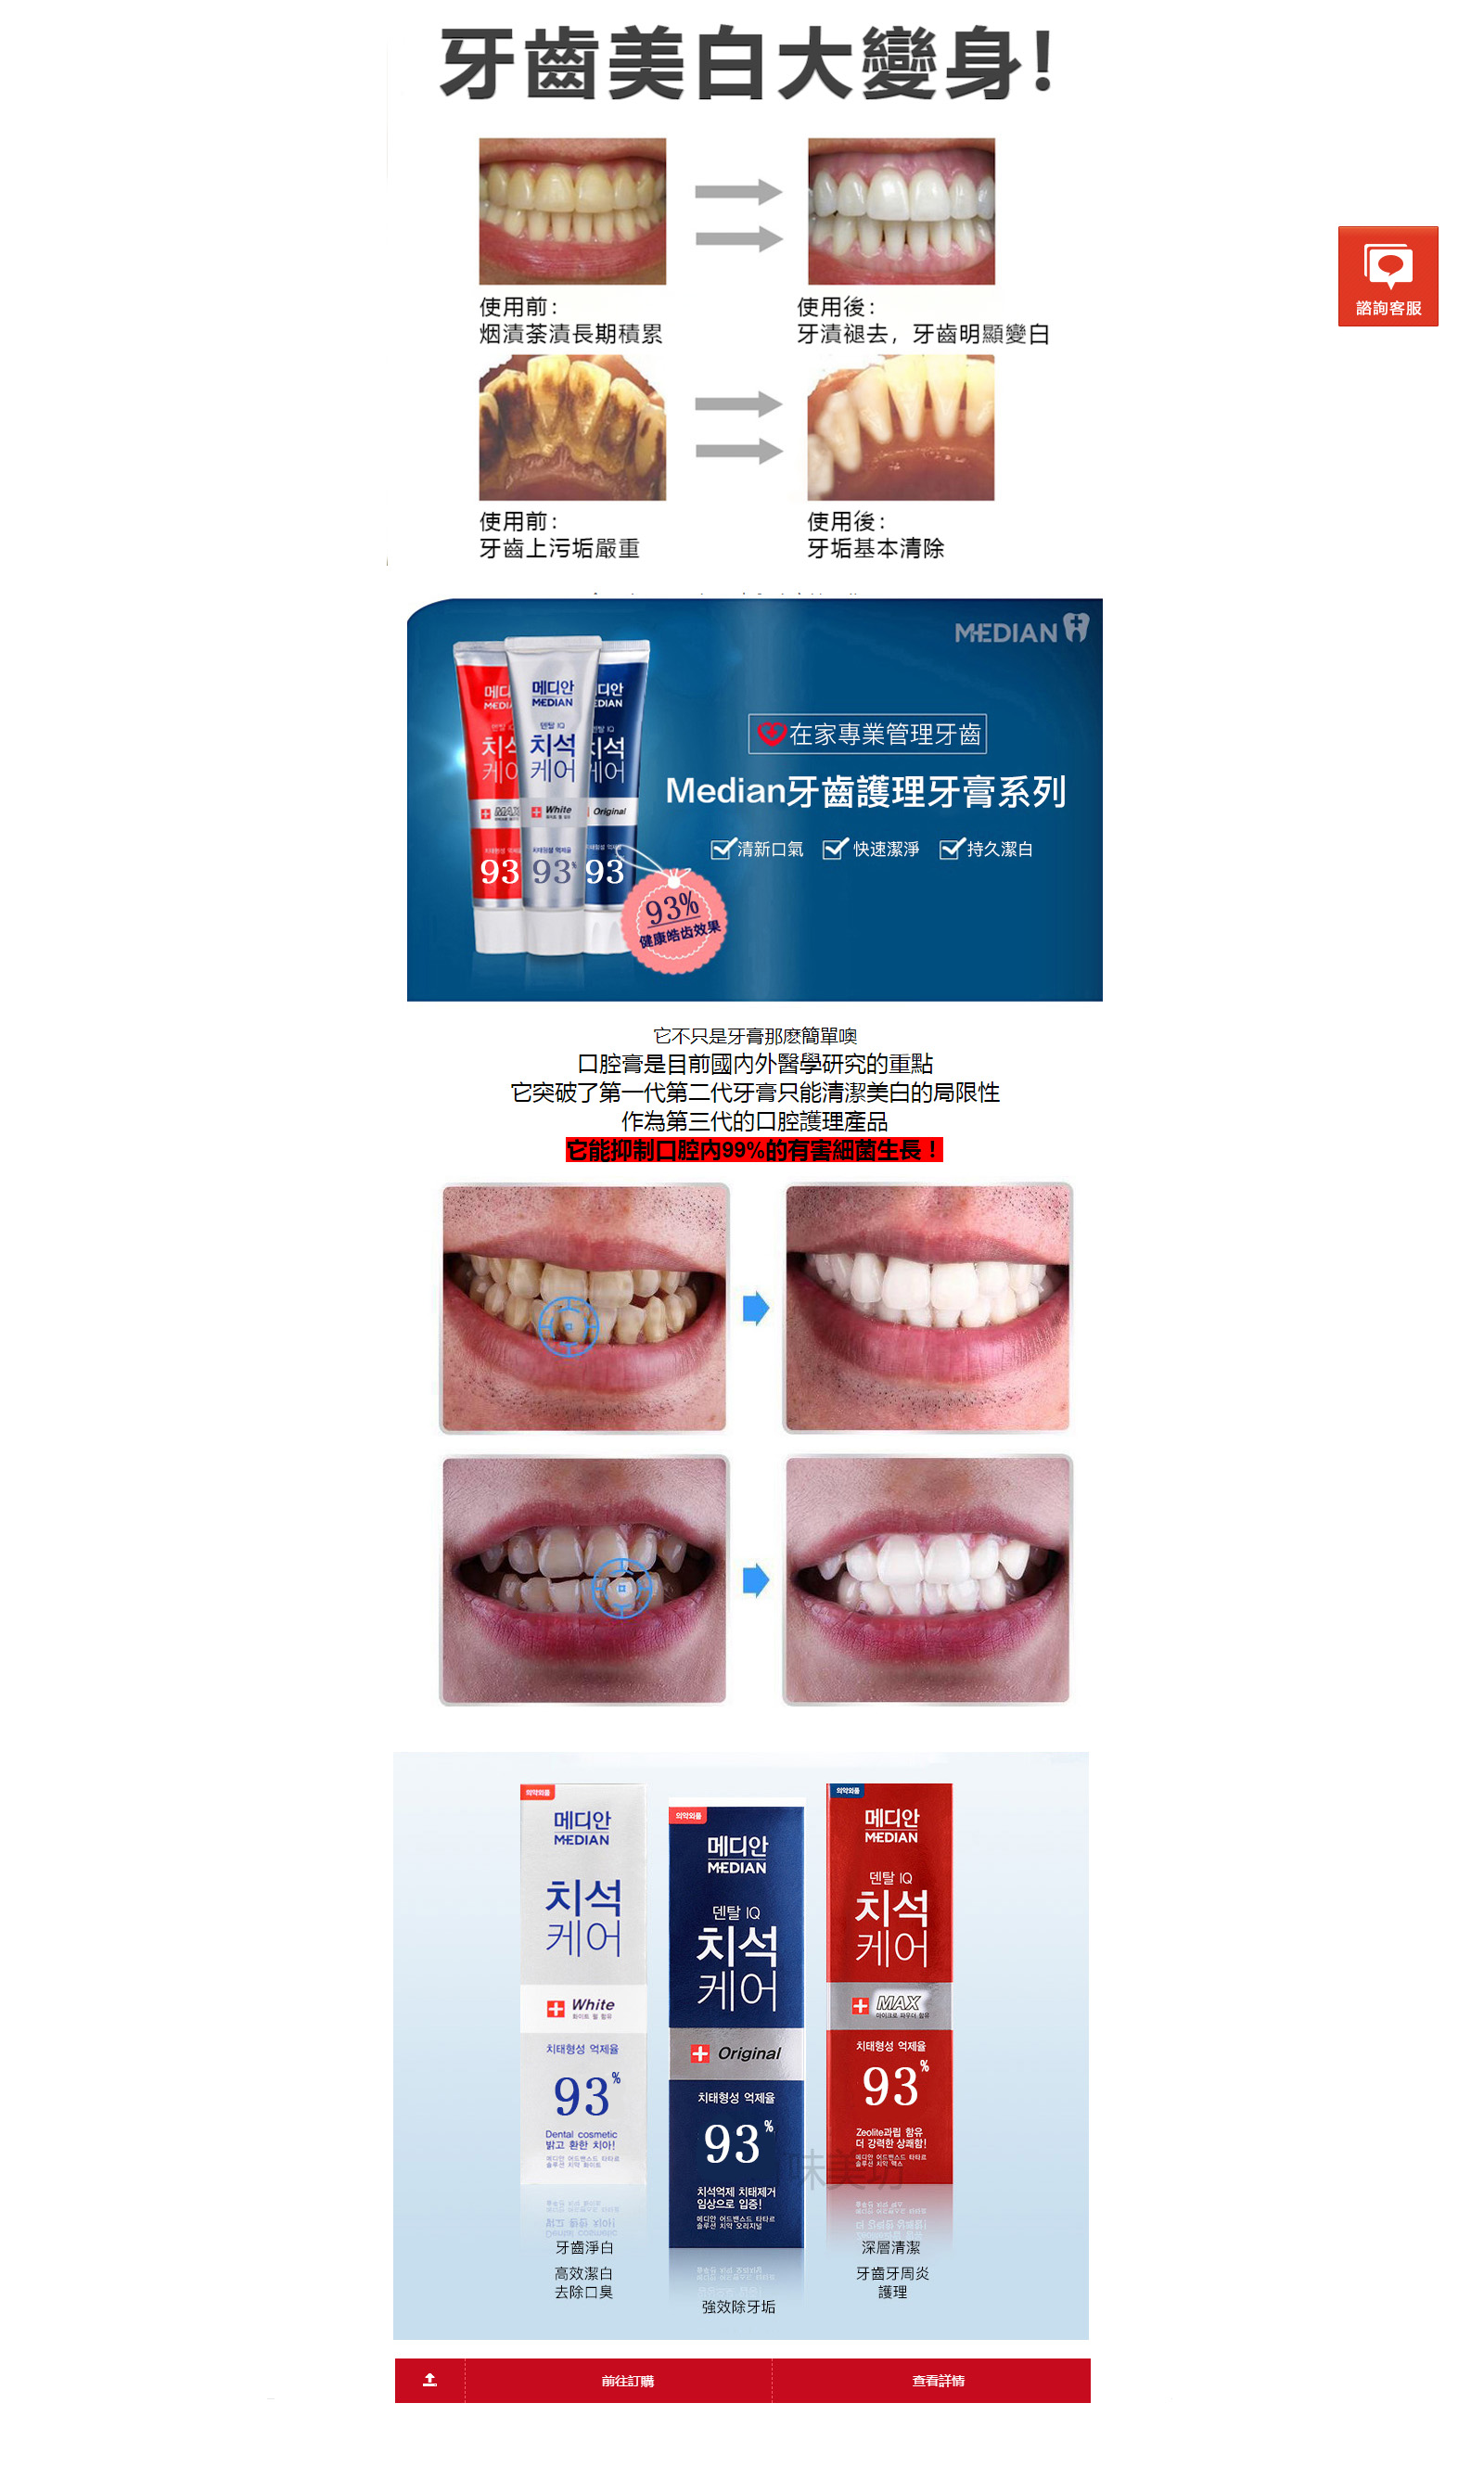 去牙垢、去牙漬、去菸垢、去煙垢、去菸漬、去菸味-台灣美白潔牙粉專賣店